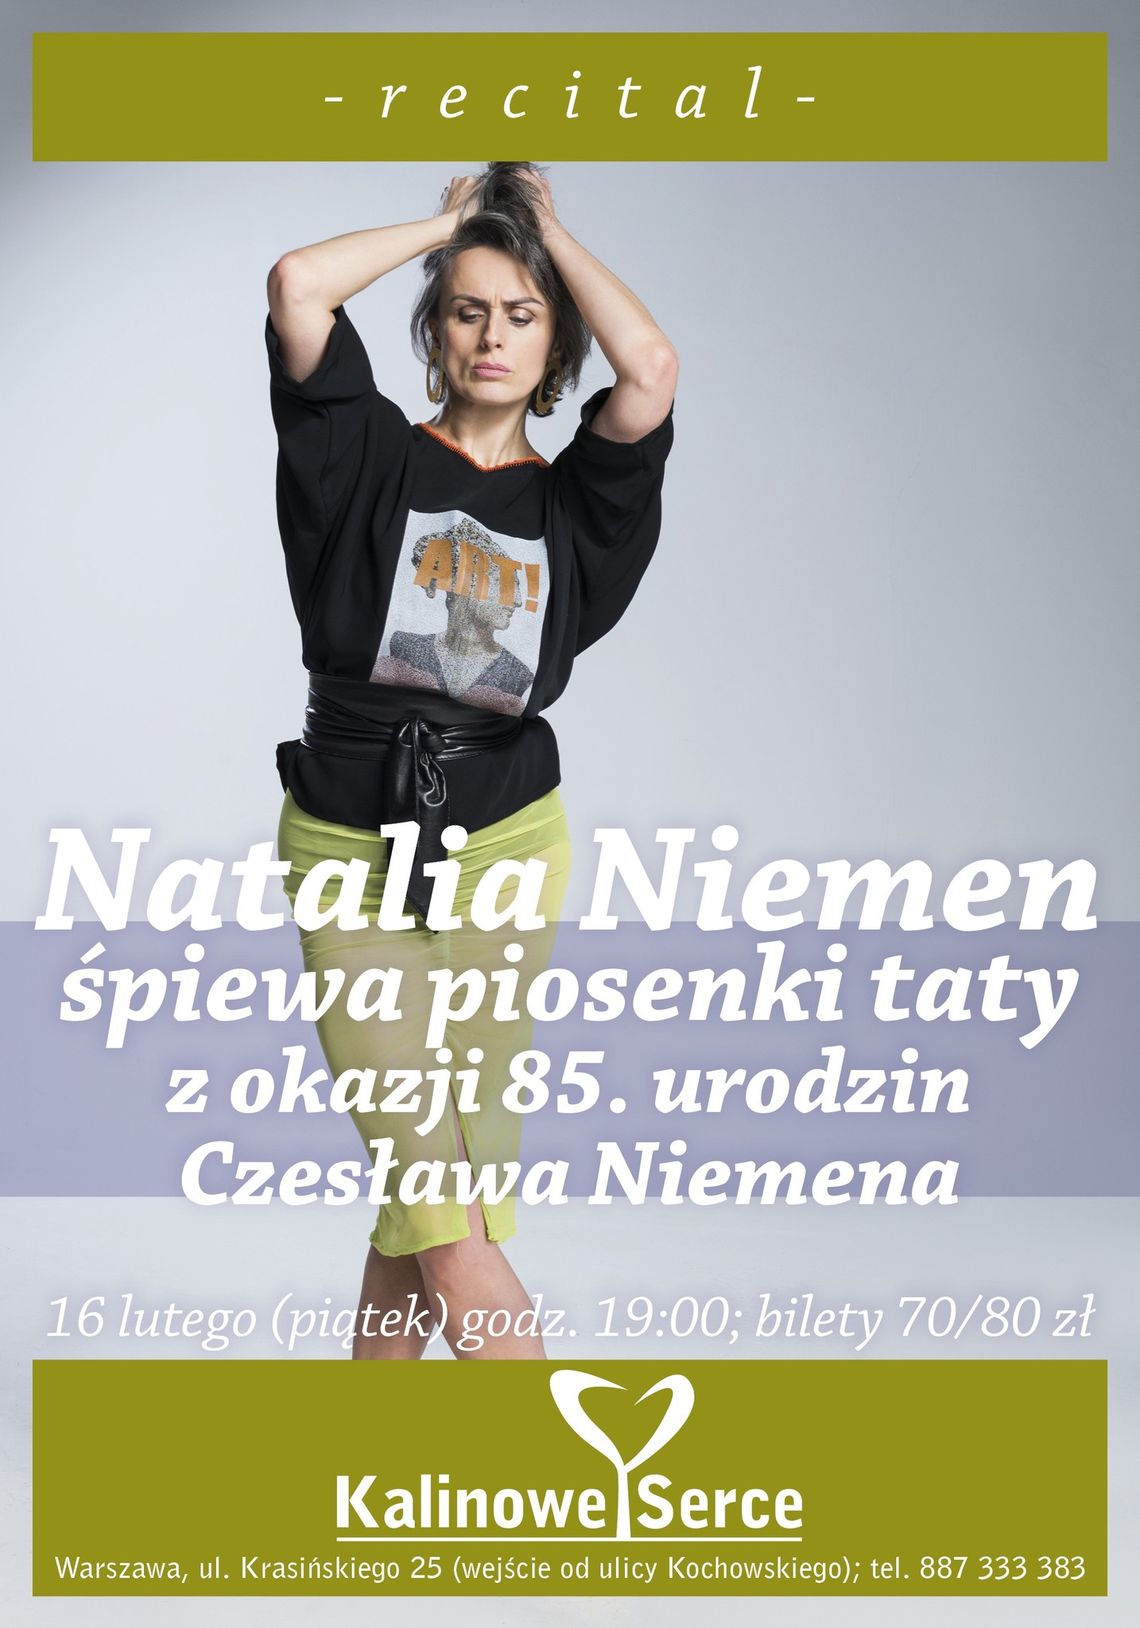 Natalia Niemen zaśpiewa piosenki taty w Kalinowym Sercu